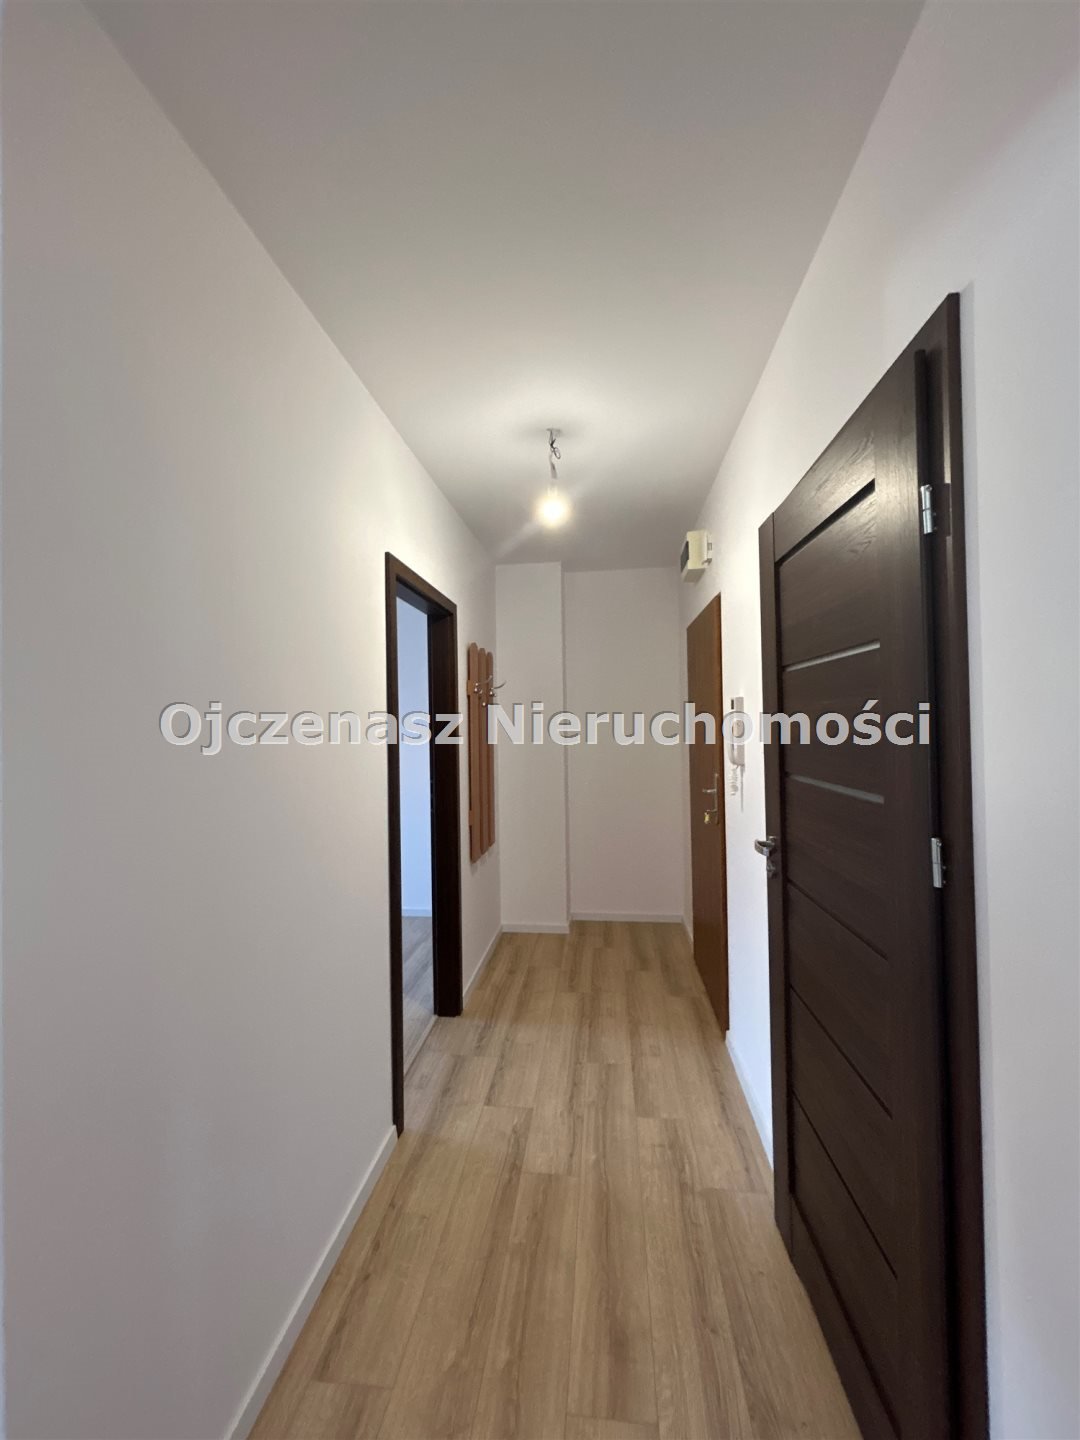 Mieszkanie dwupokojowe na sprzedaż Bydgoszcz, Fordon, Bohaterów  46m2 Foto 3